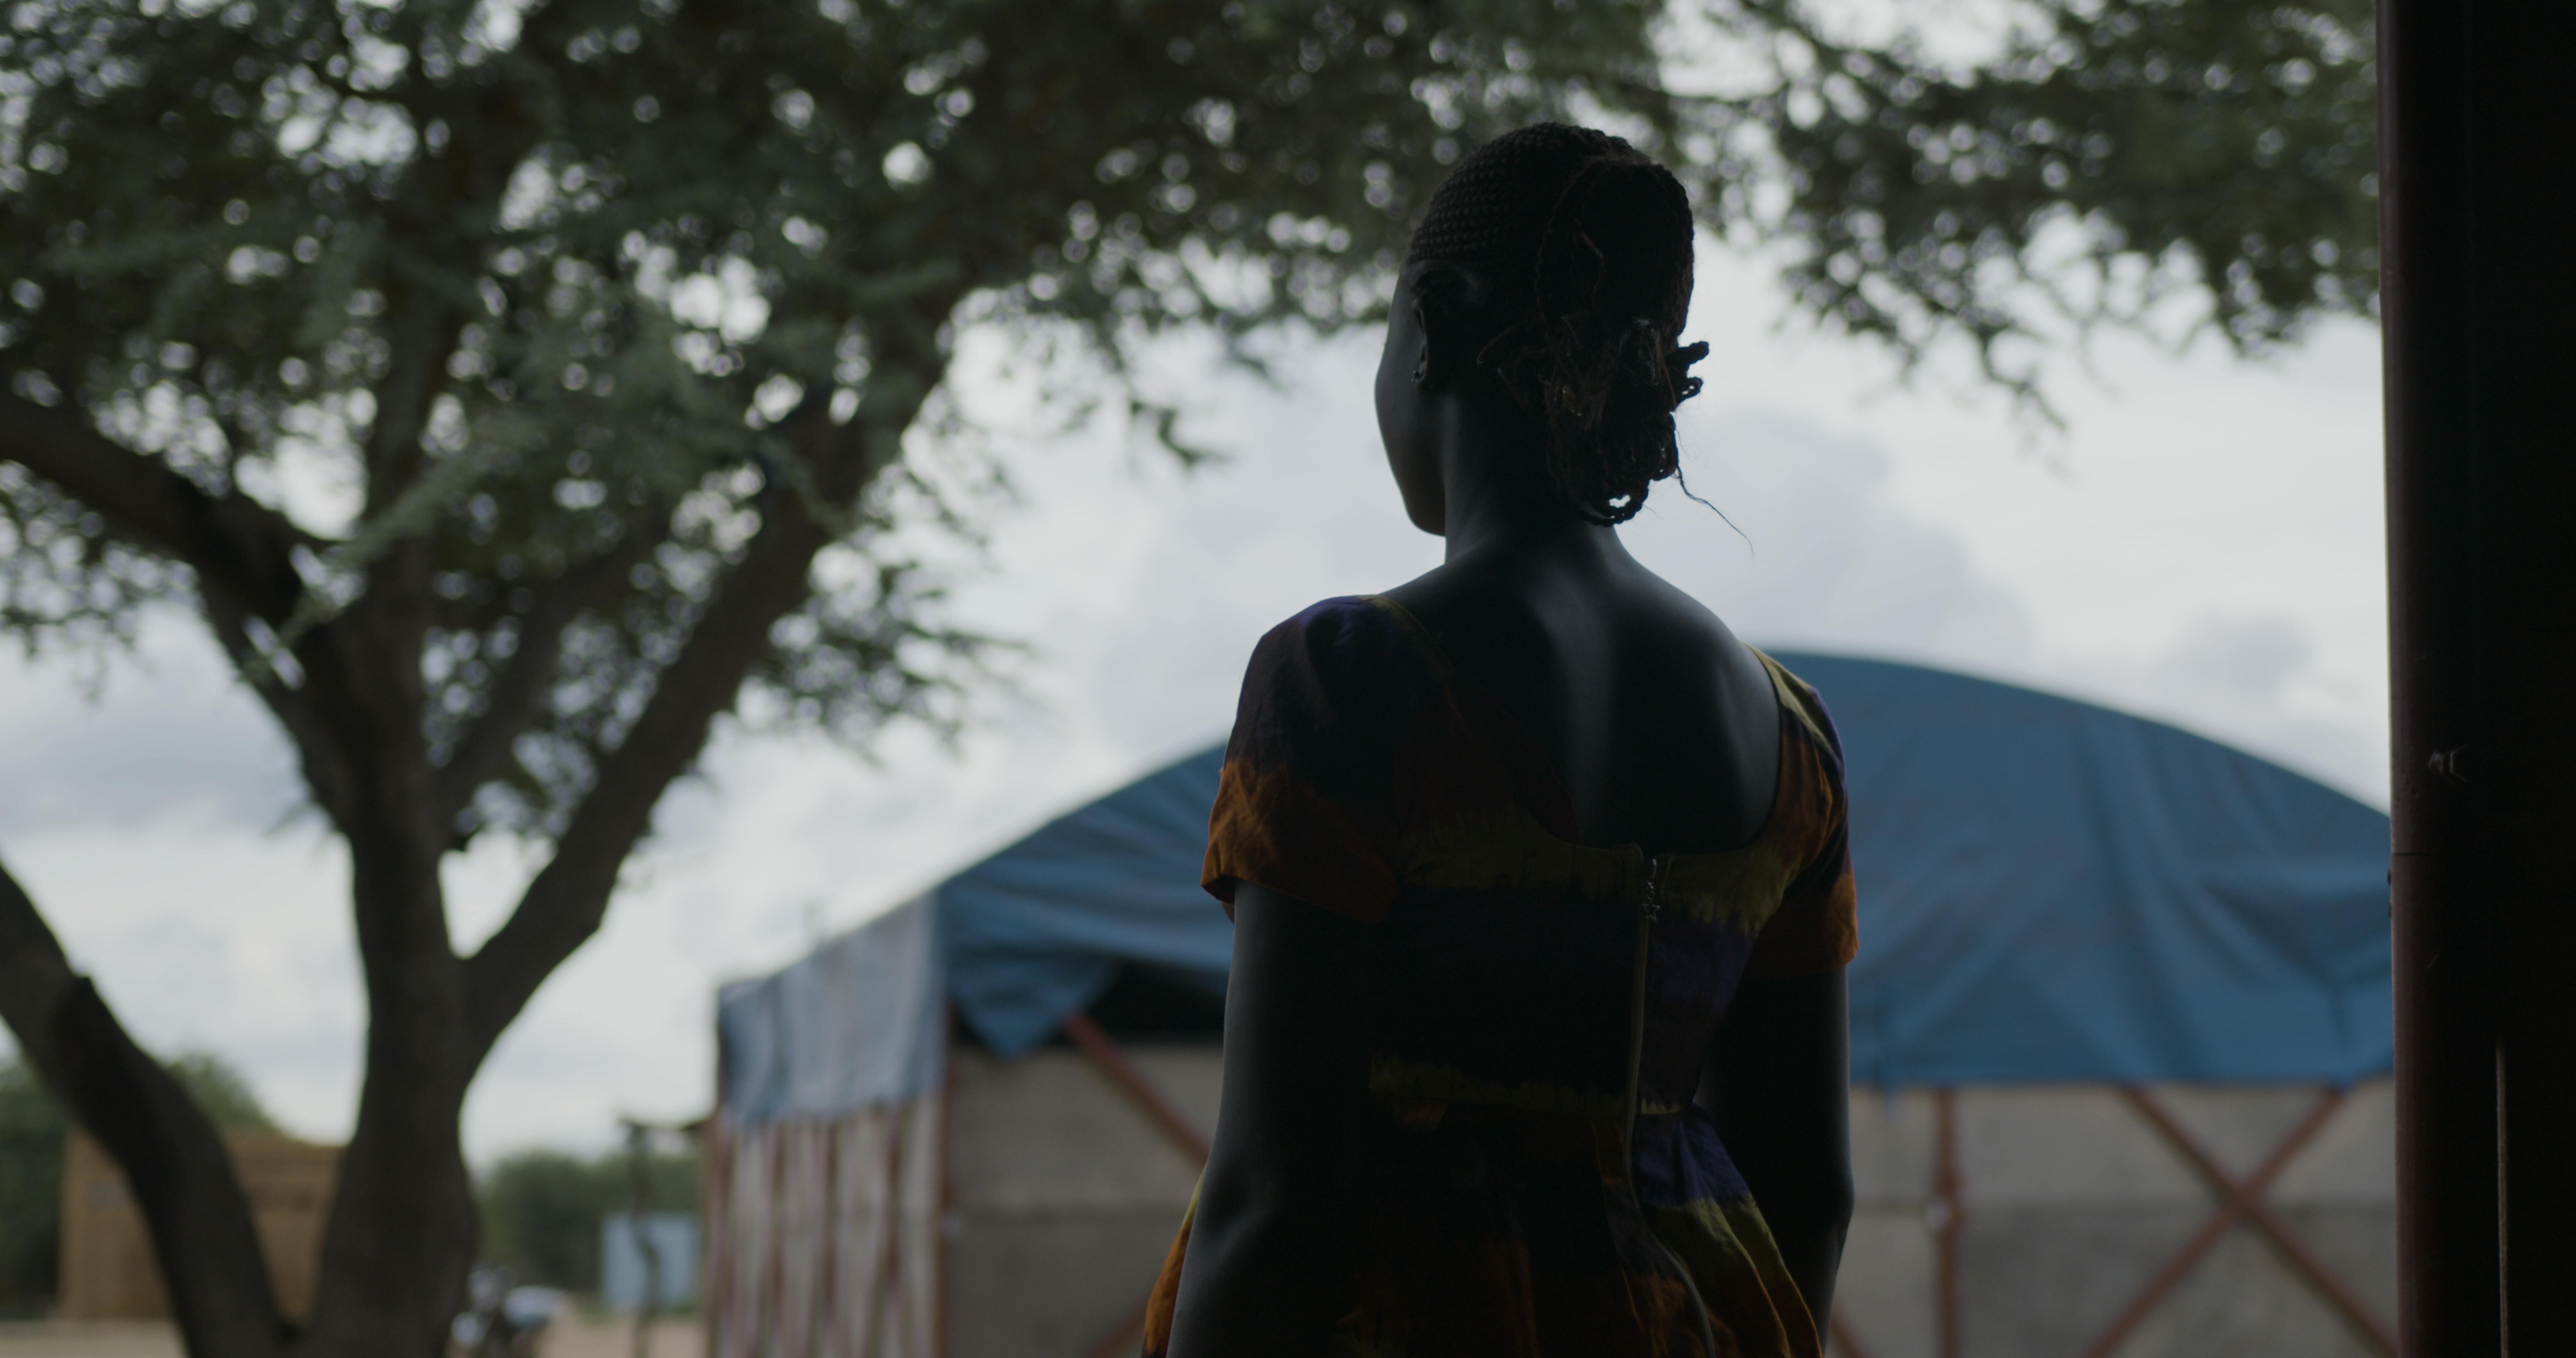 Samira, 15 anni, torna a scuola a Dori, in Burkina Faso dopo che la sua scuola è stata attaccata e quindi chiusa. È stata quasi costretta a sposarsi, ma con il supporto di un mentore e attraverso i programmi sostenuti dall'UNICEF, è felice di poter frequentare di nuovo la scuola.